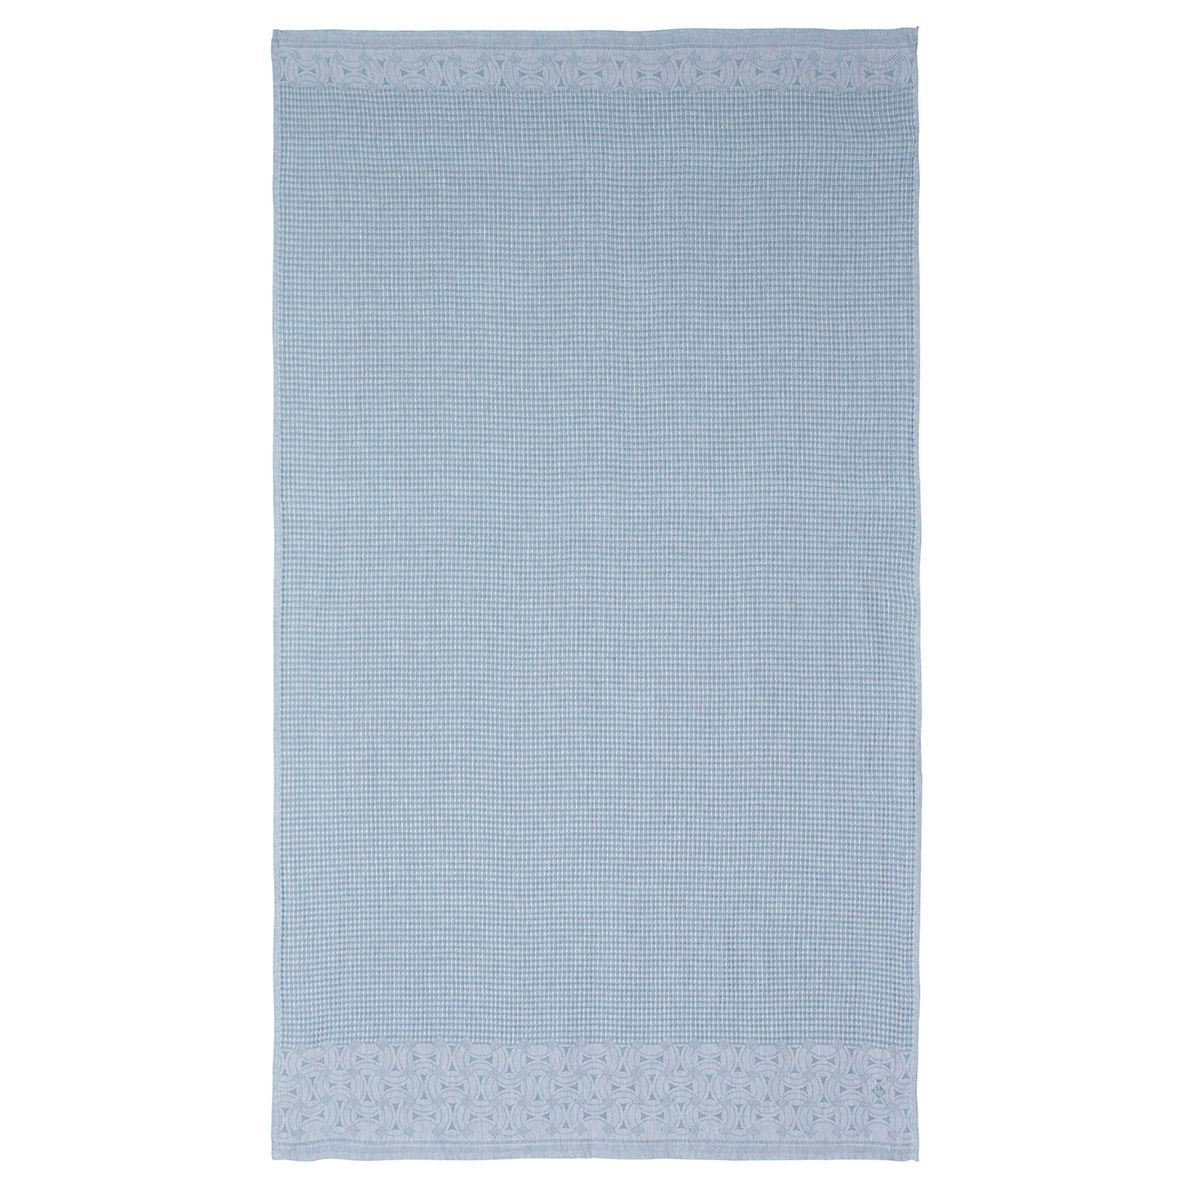 Lula Blue Ice Linen Bath Towels by Le Jacquard Français | Fig Linens